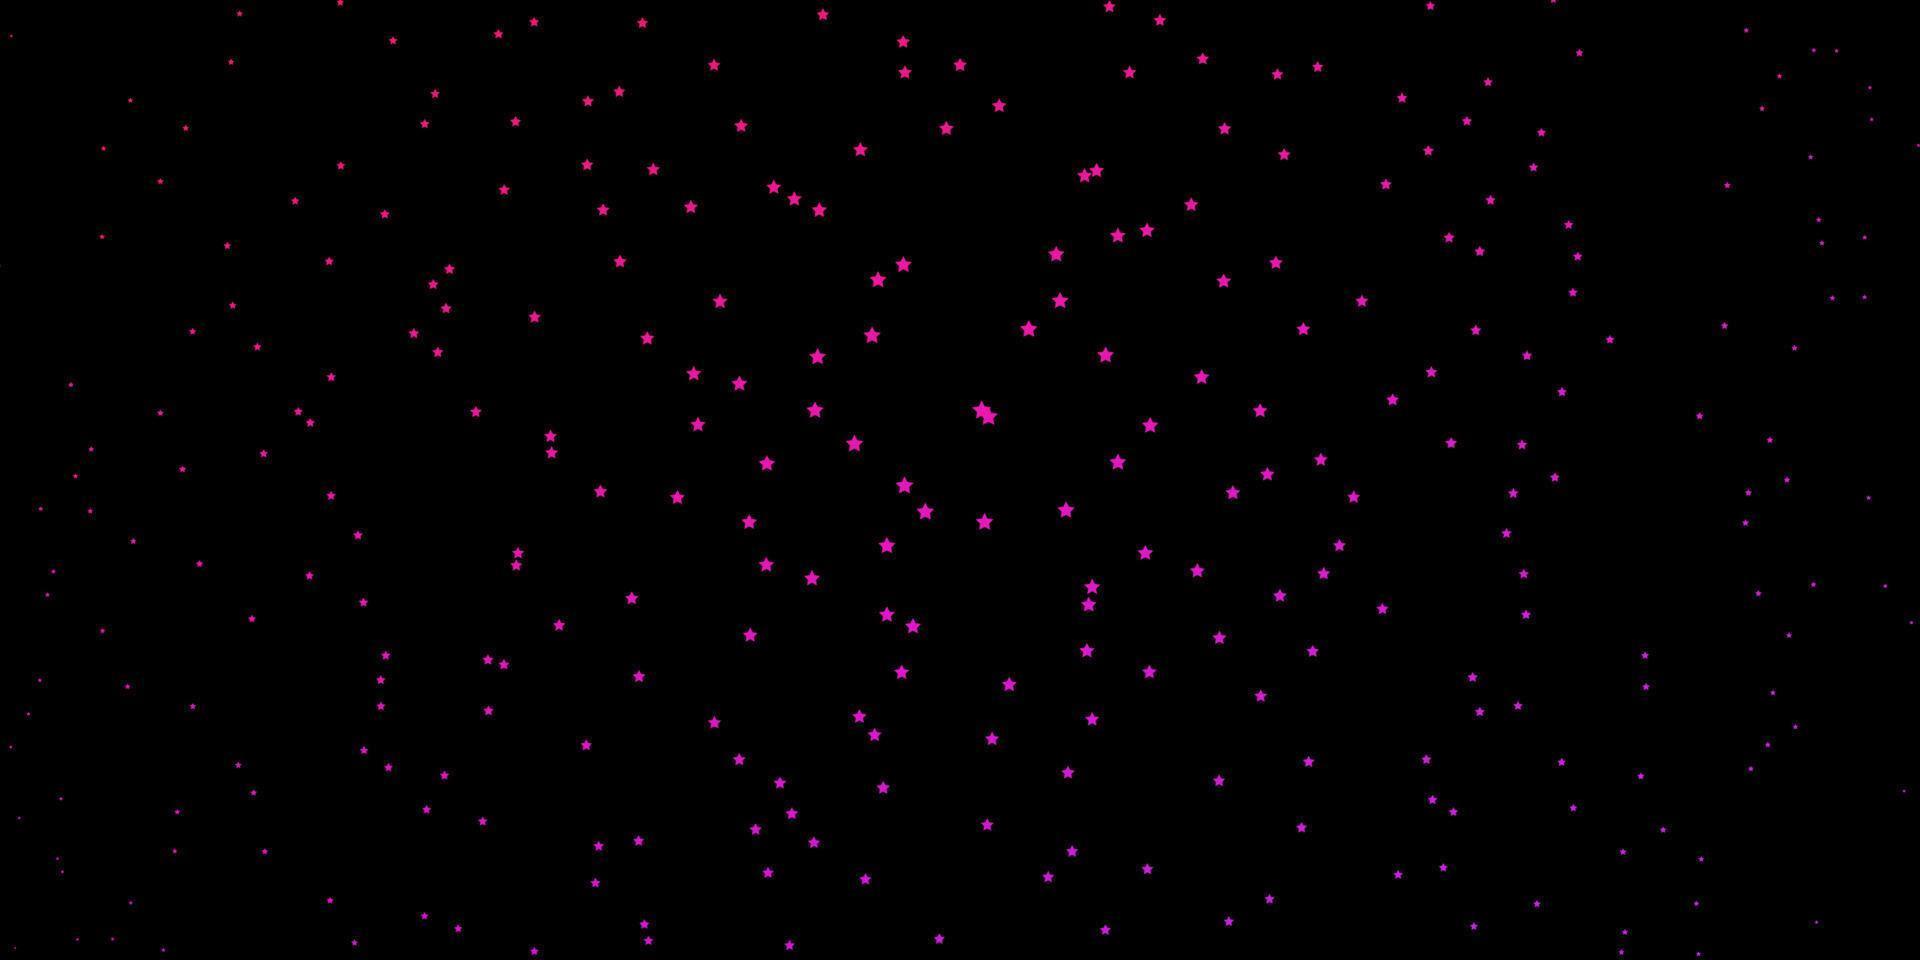 fundo vector roxo, rosa escuro com estrelas pequenas e grandes.